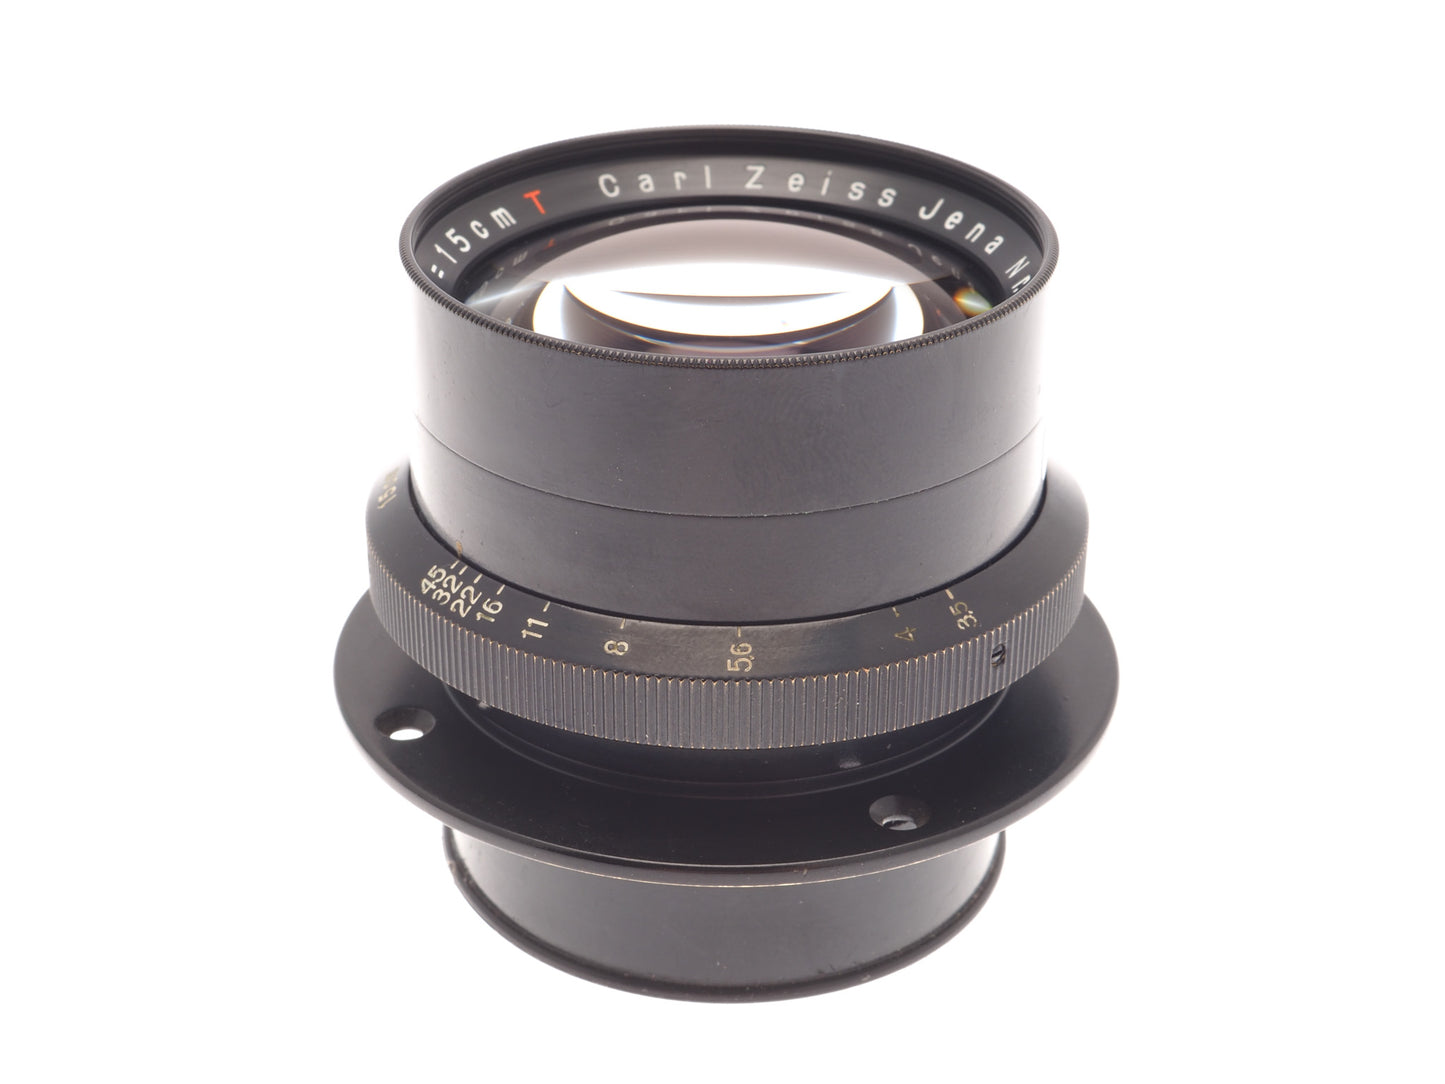 Carl Zeiss 15cm f3.5 Tessar Jena T - Lens